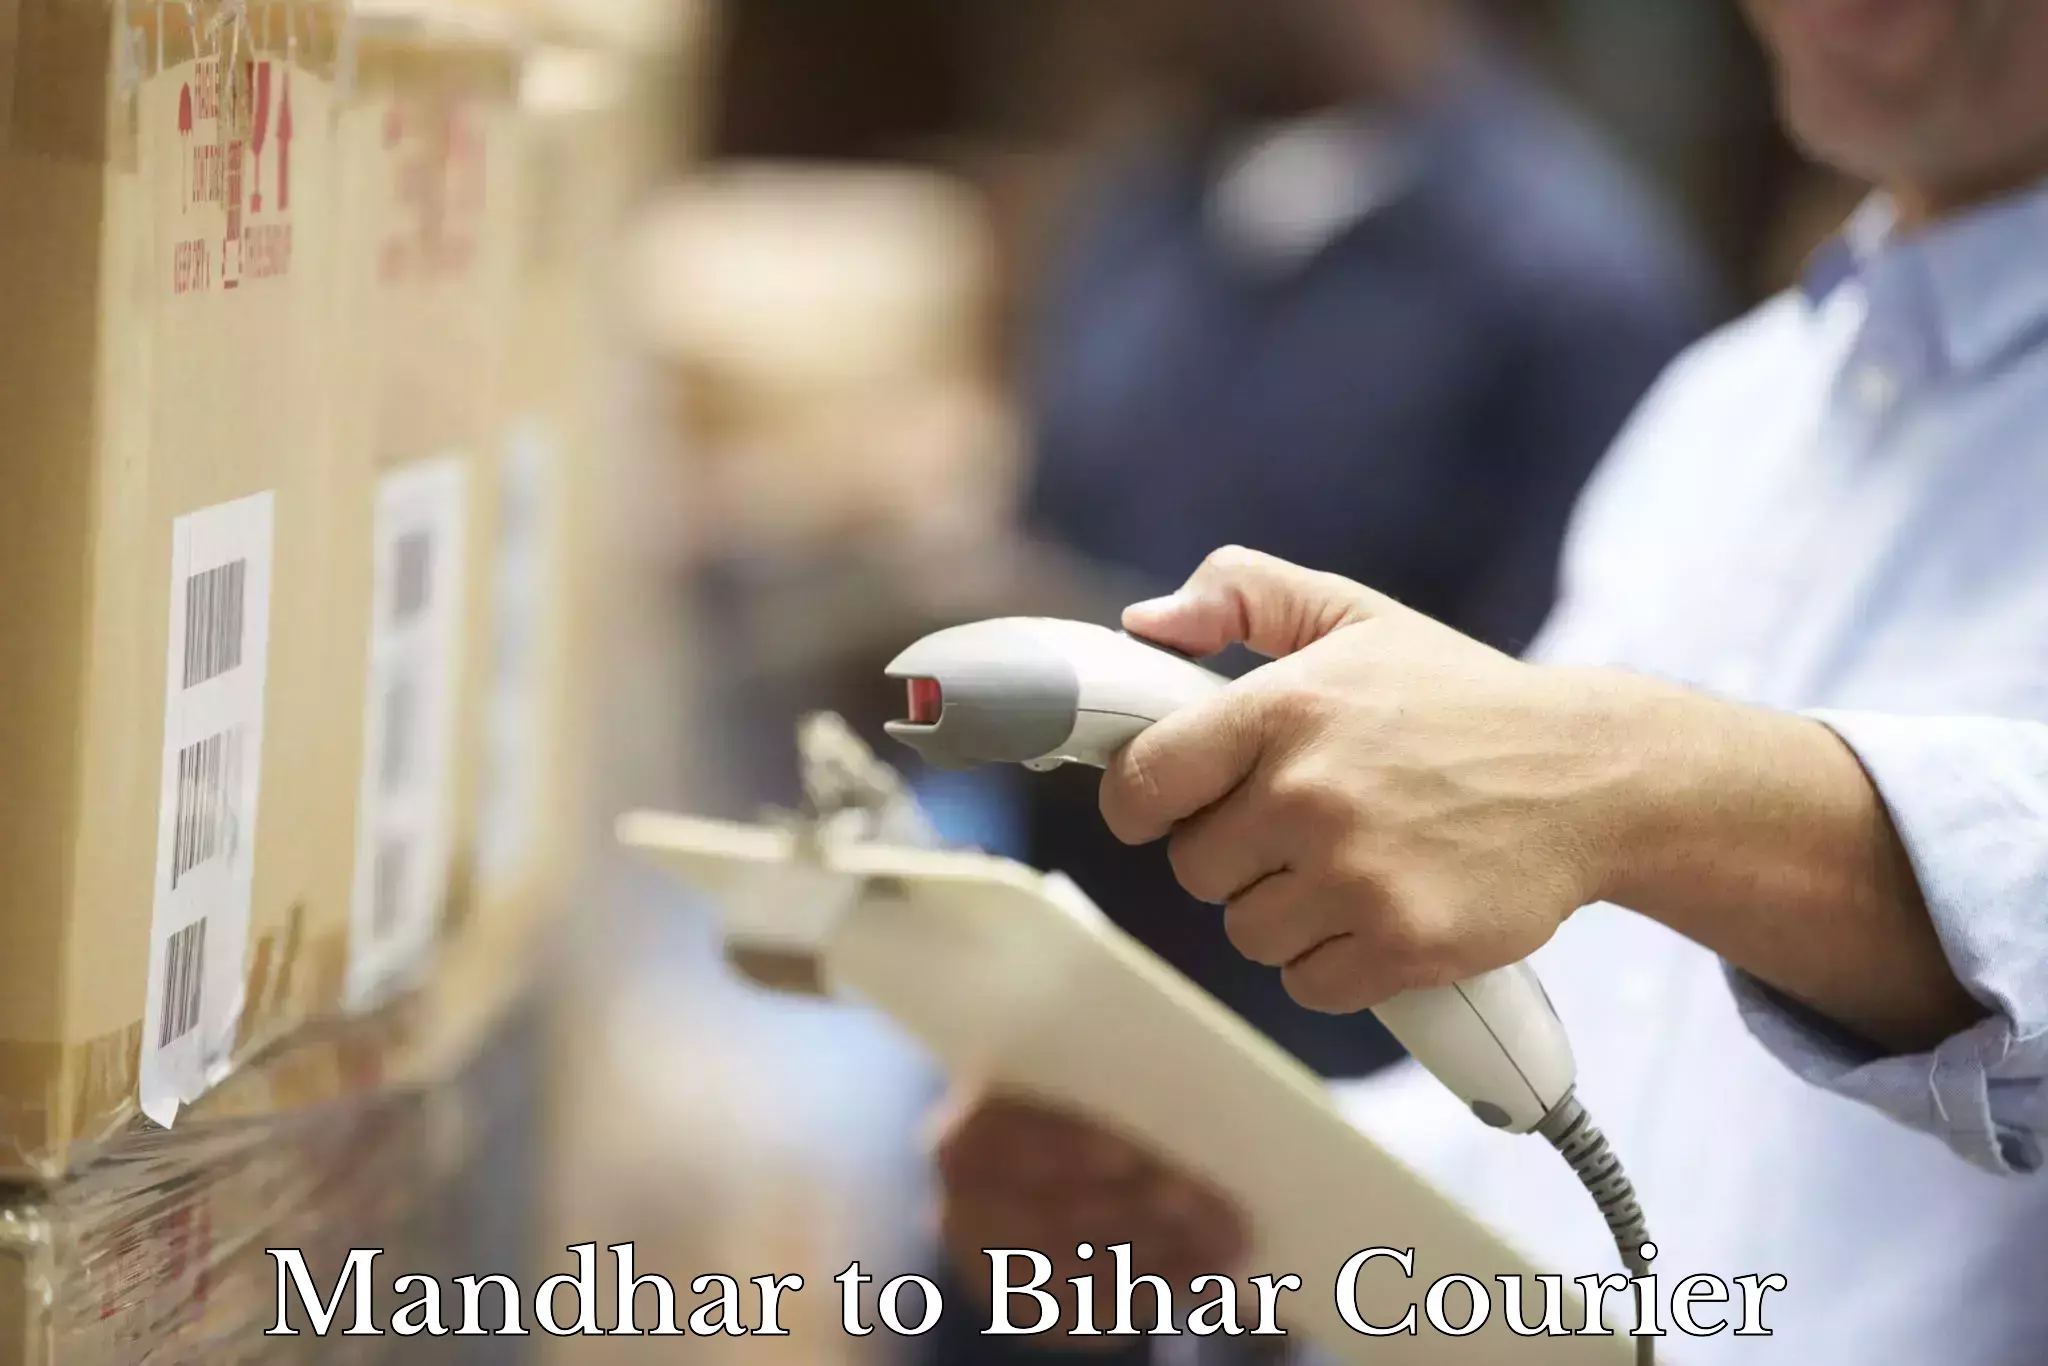 Express logistics service Mandhar to Bihar